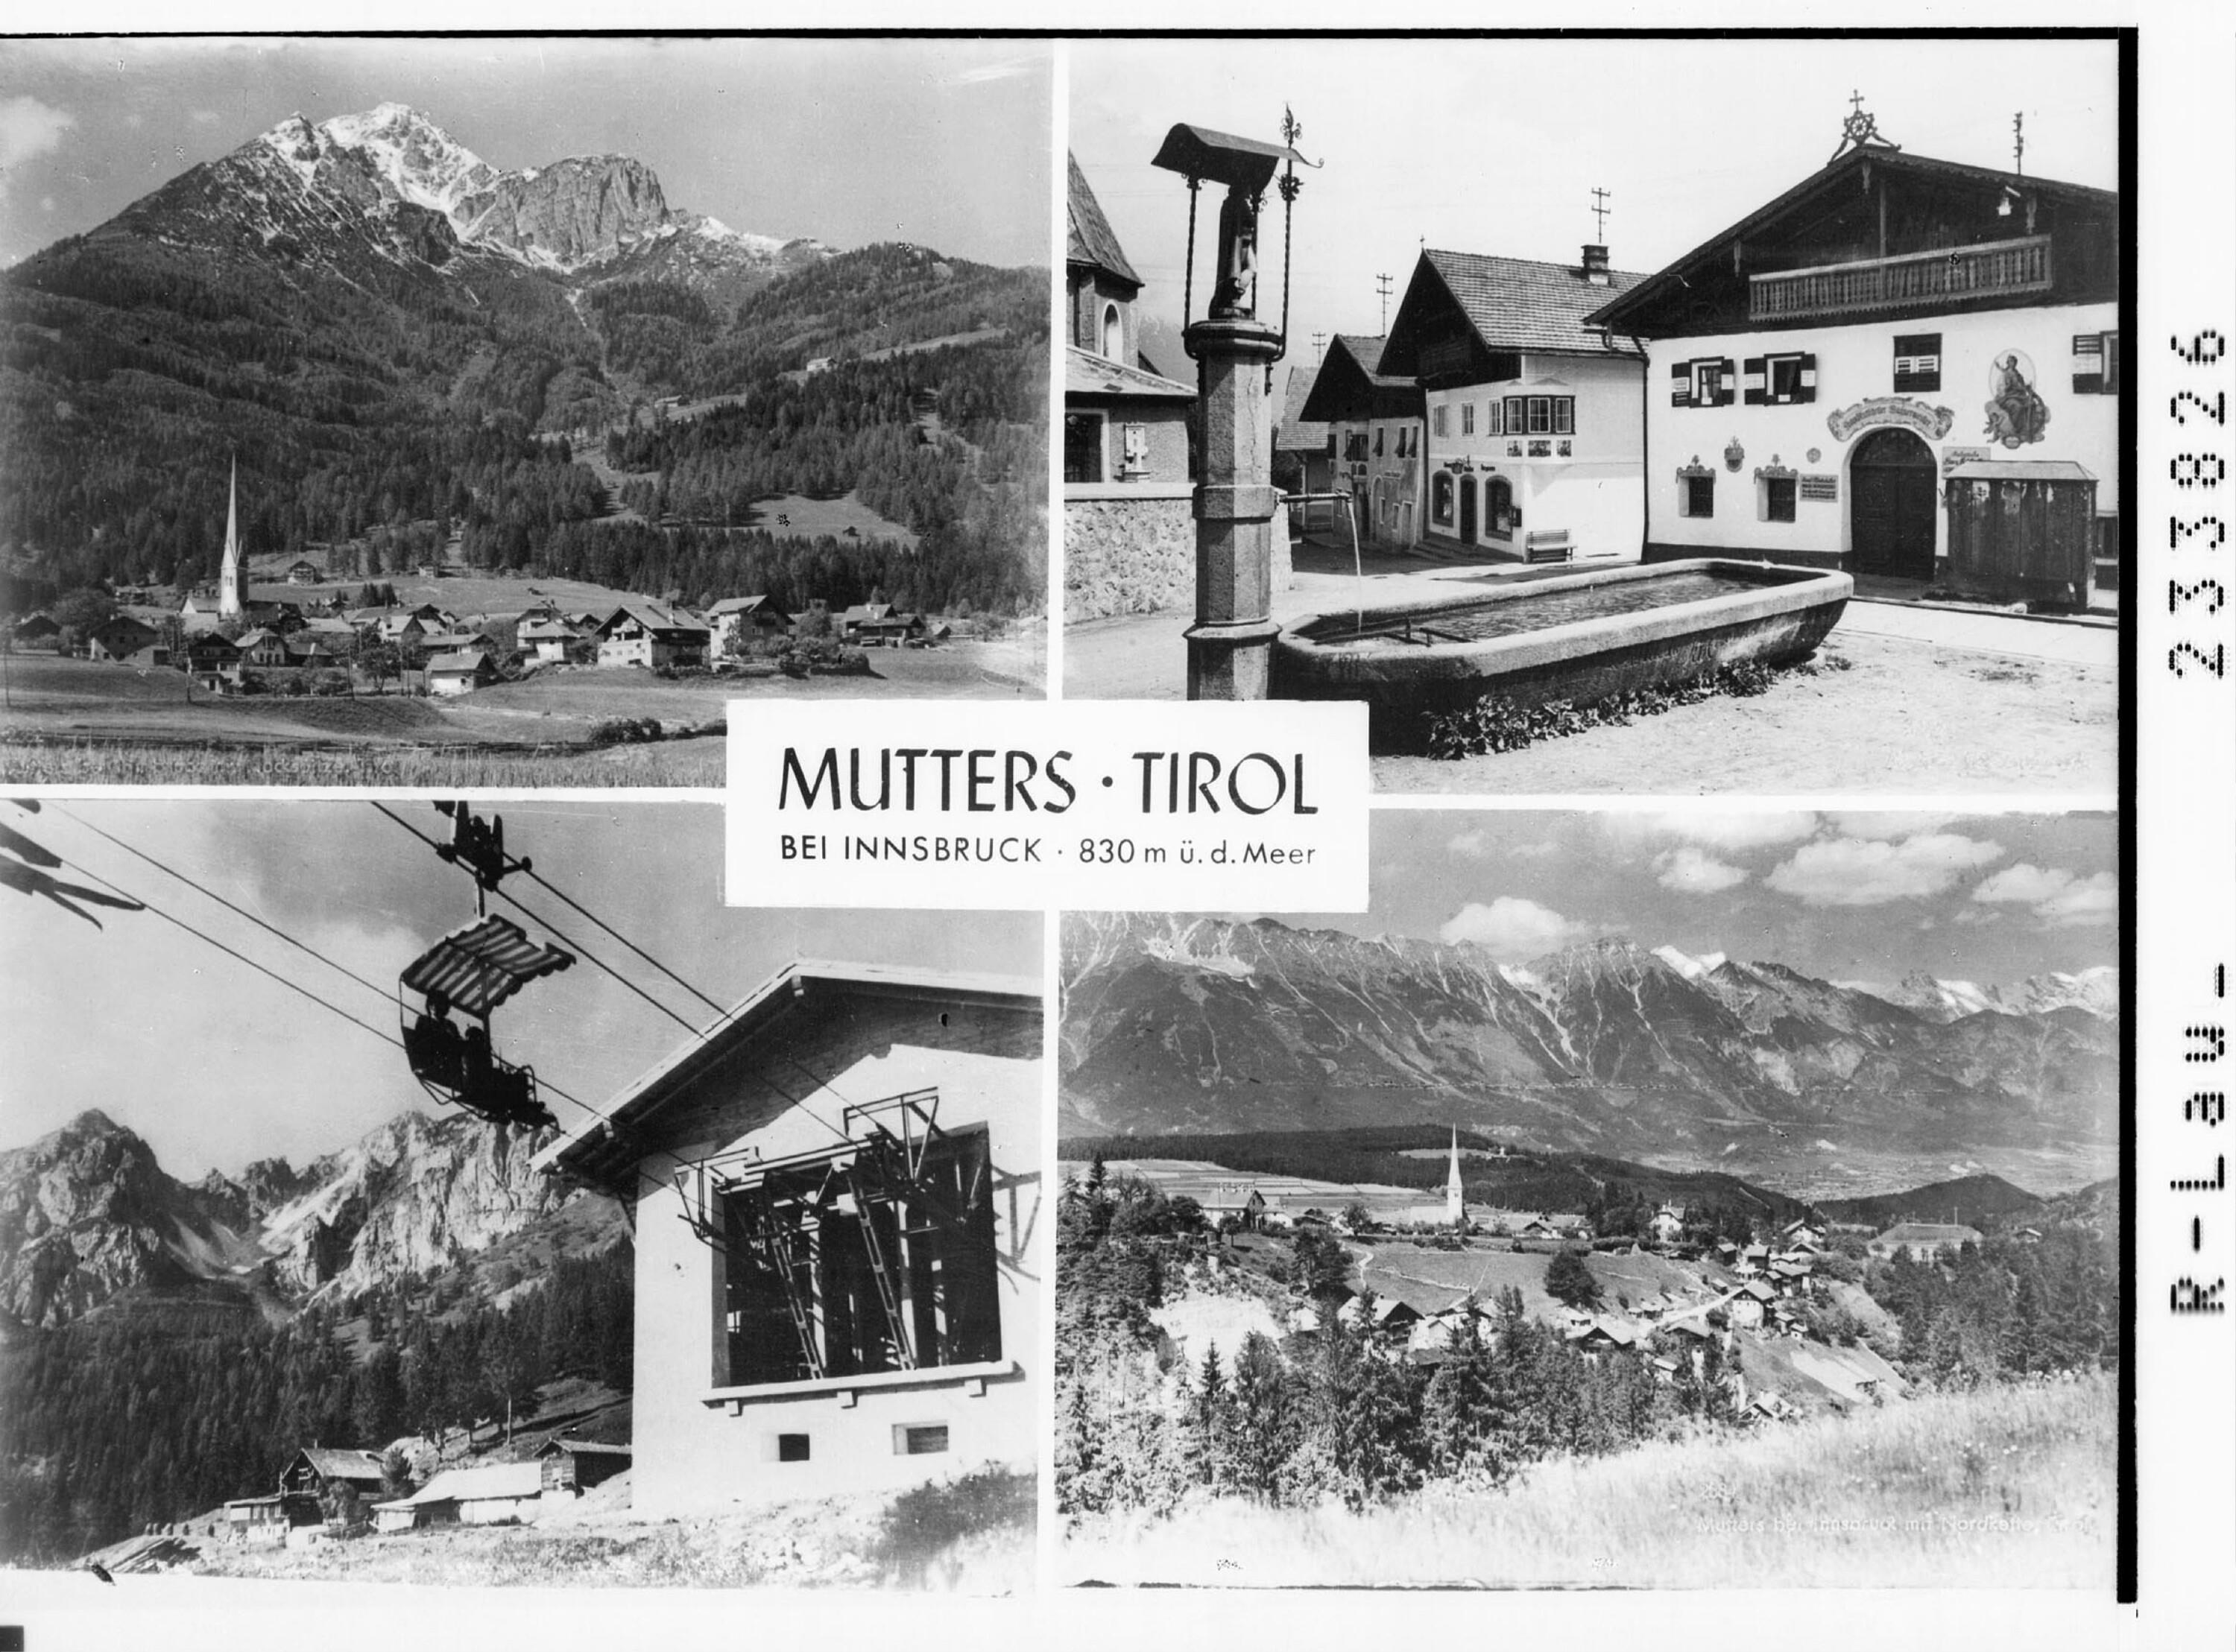 Mutters bei Innsbruck 830 m ü. d. Meer - Tirol></div>


    <hr>
    <div class=